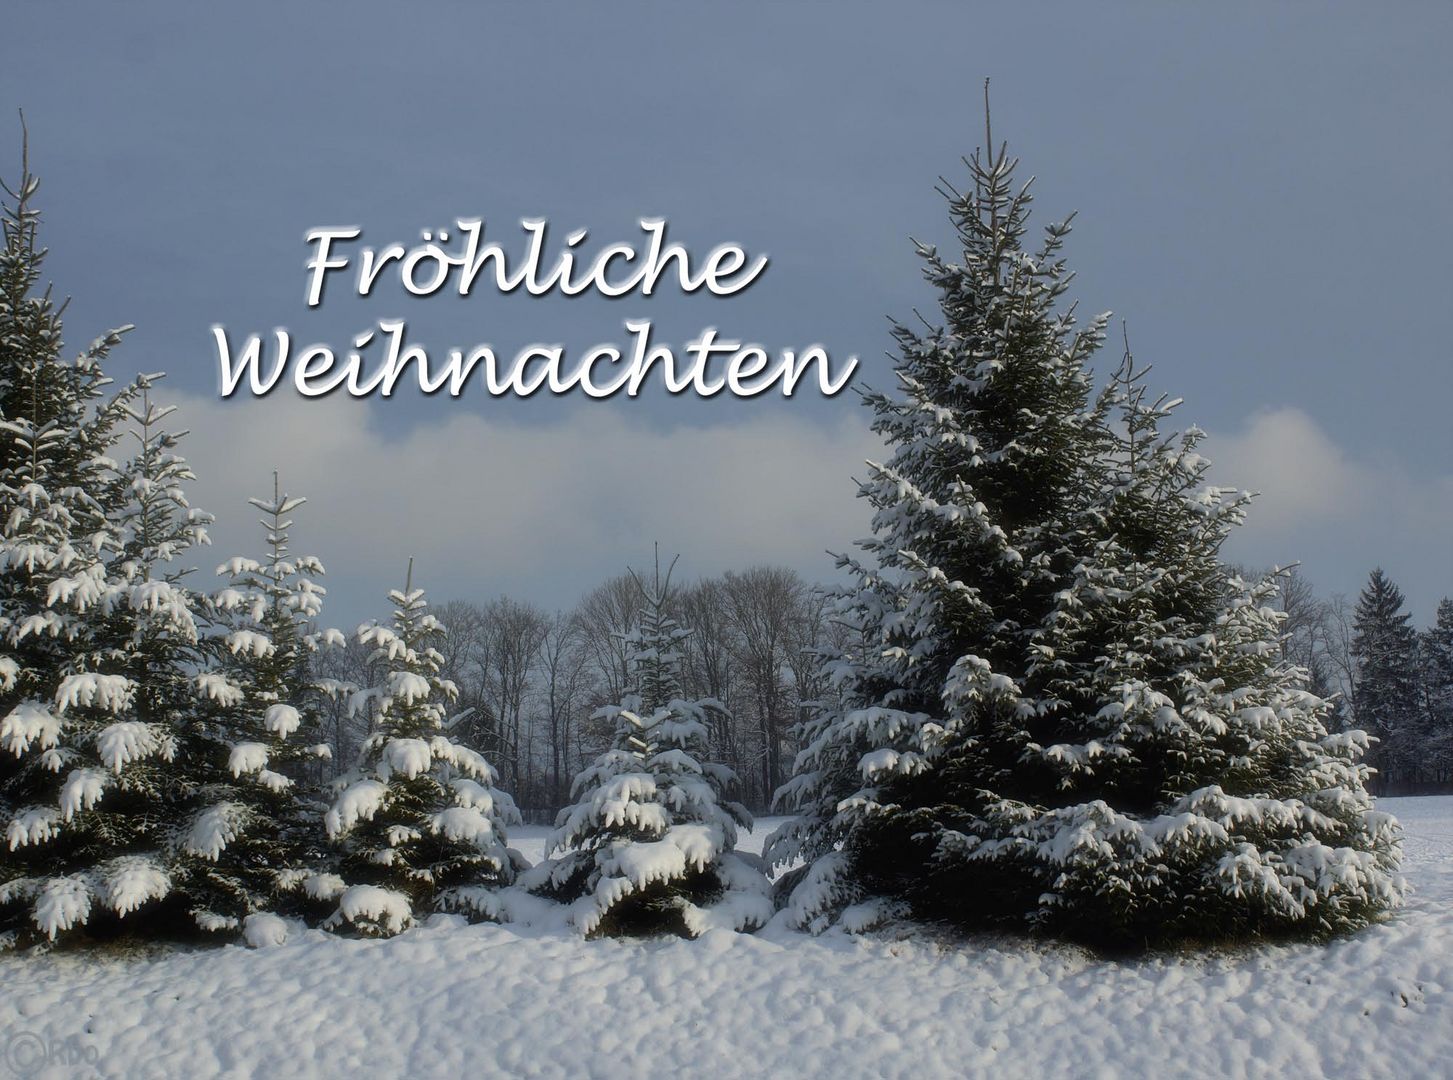 froehliche-weihnachten-d25cc18d-936a-47f3-928e-85430d5591a2.jpg